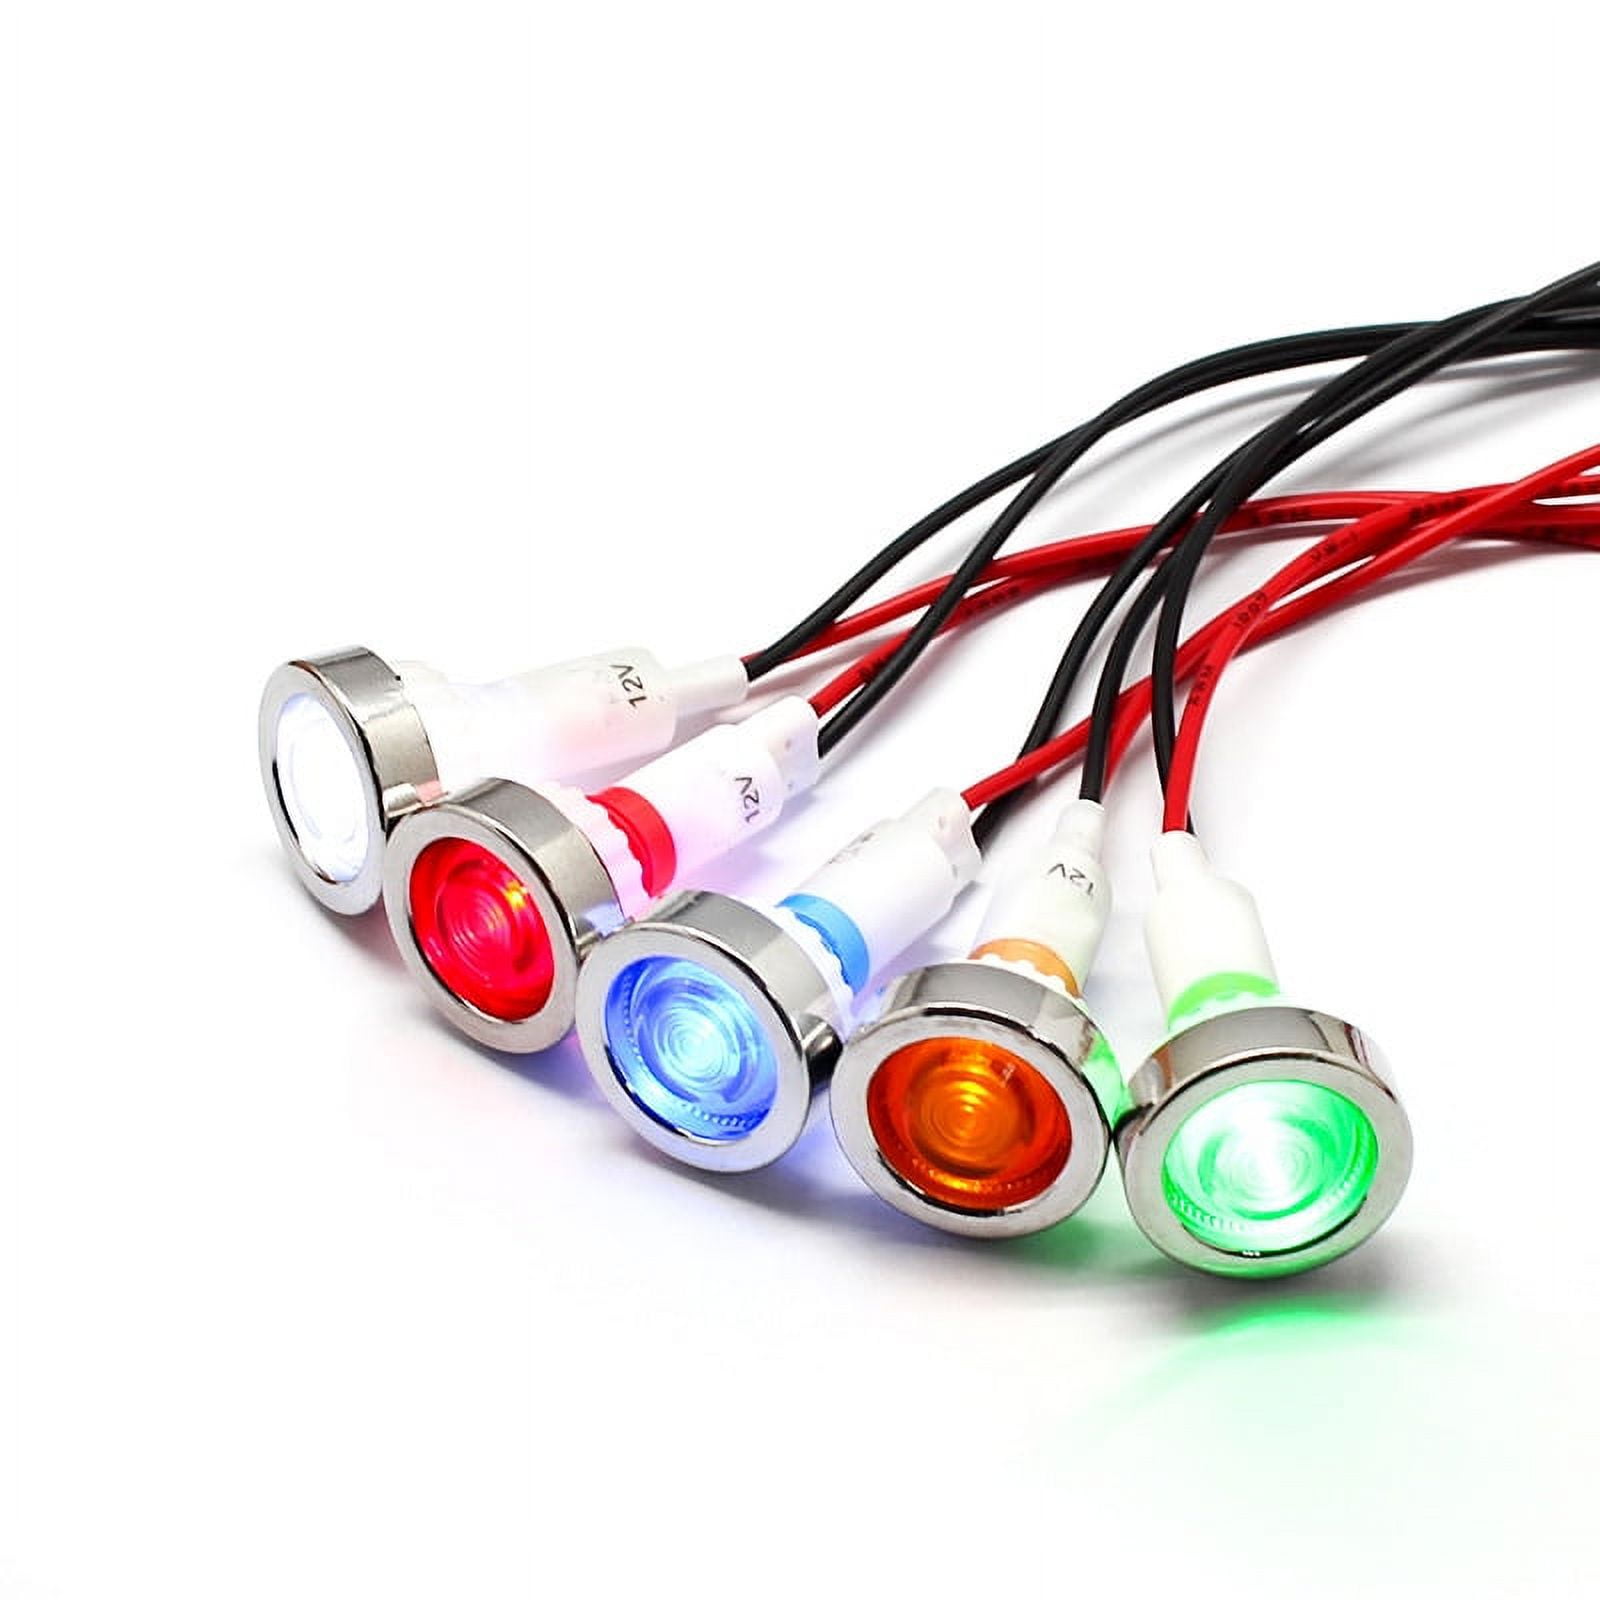 LED Warnleuchte S-Alert ECO, 10-30V, Kabel 5m